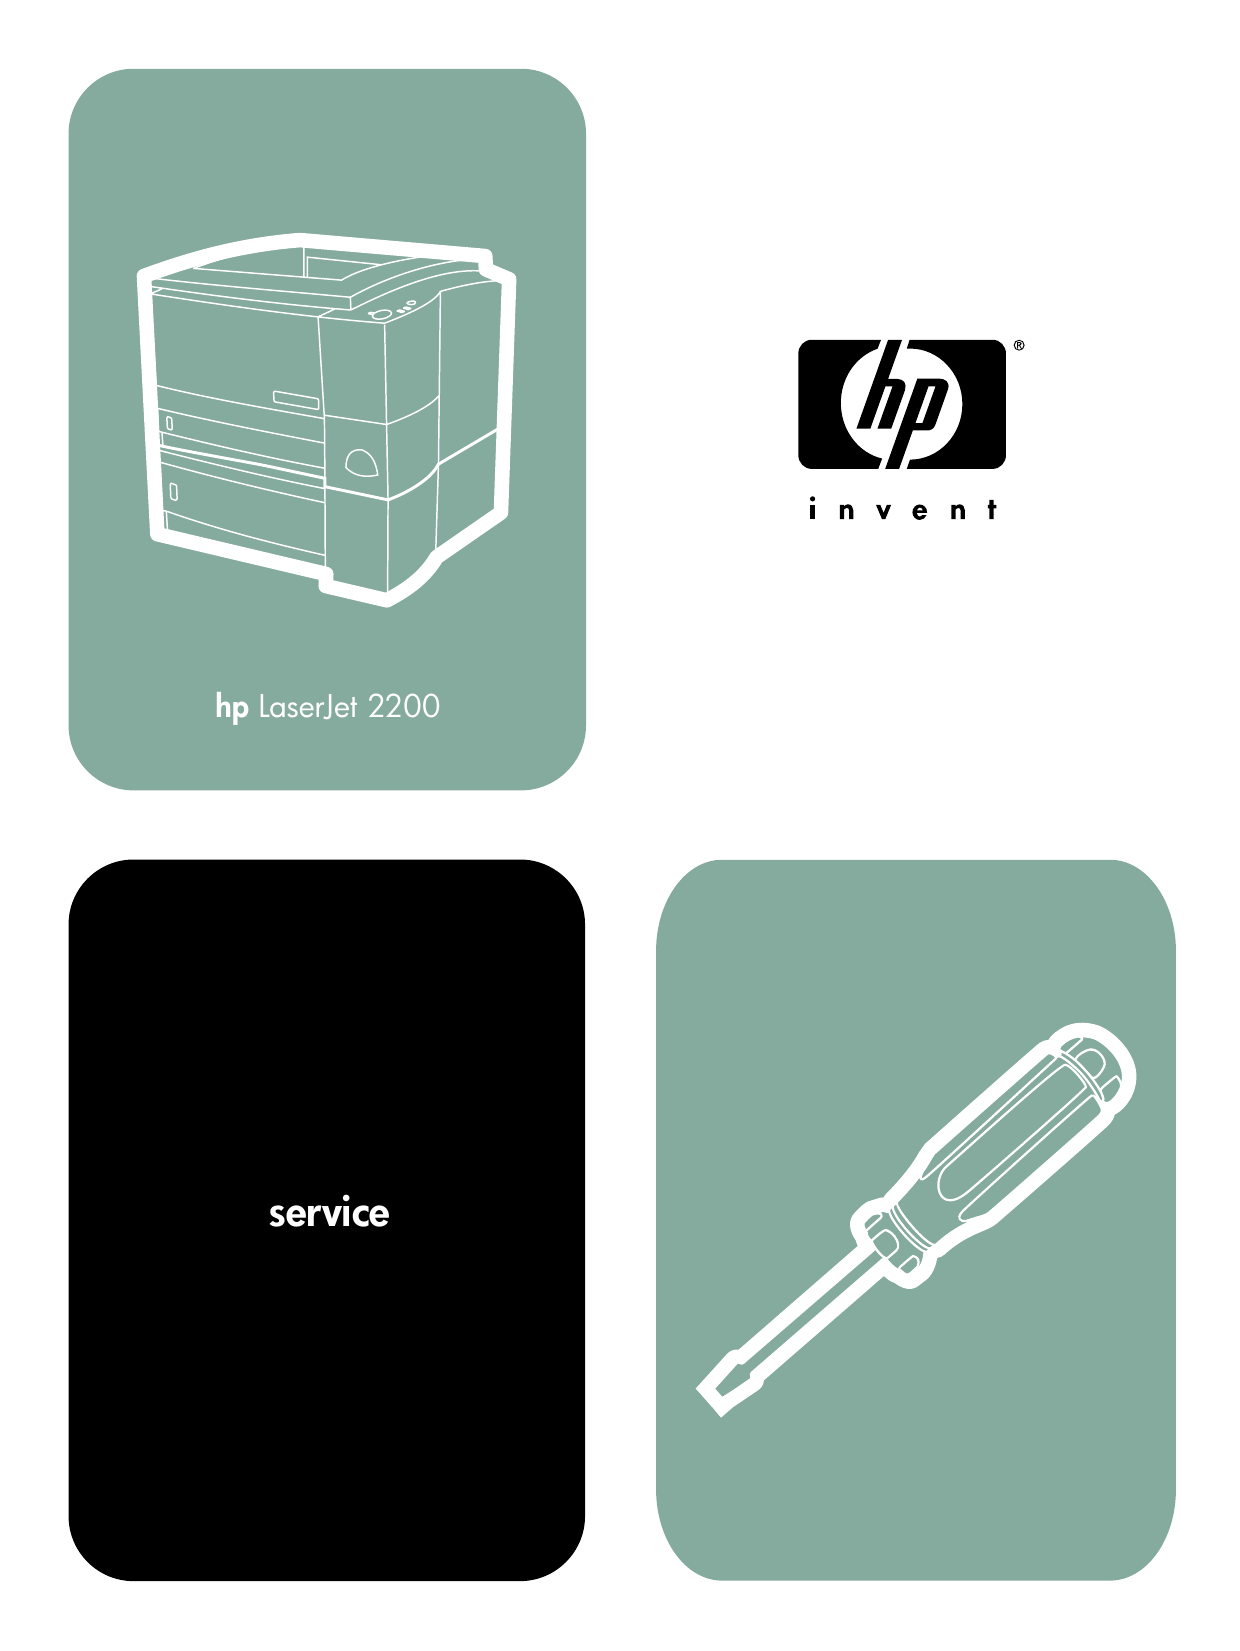 HP Laserjet 2200, 2200, 2200D, 2200DN laser printer service guide Preview image 6